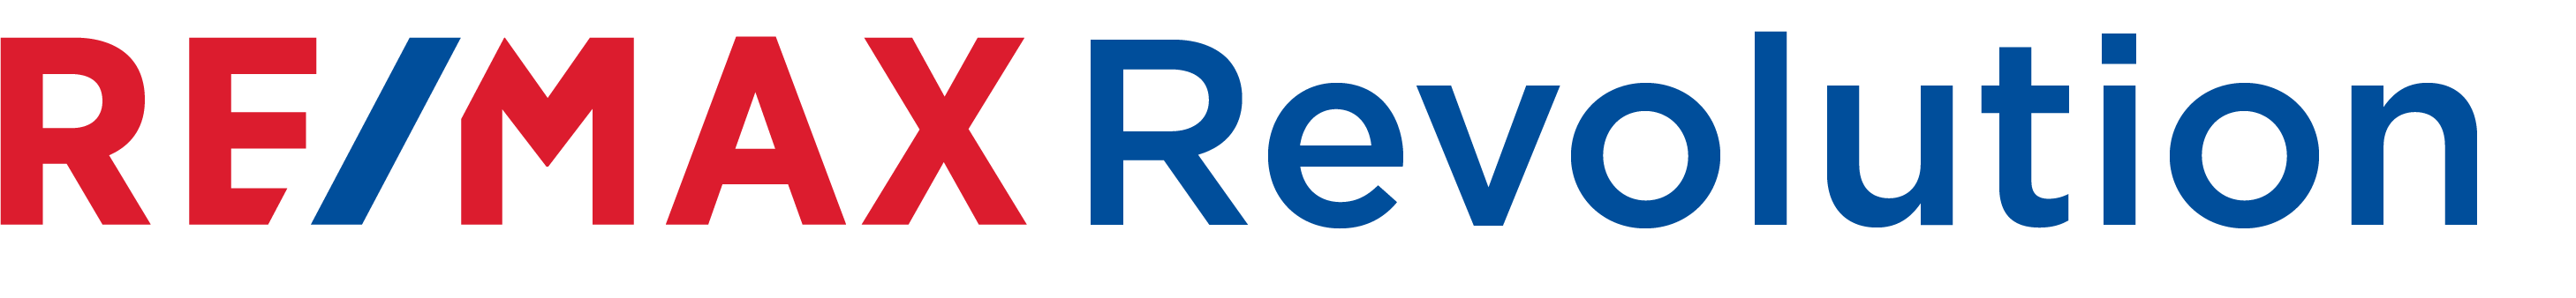 RE/MAX Revolution Logo